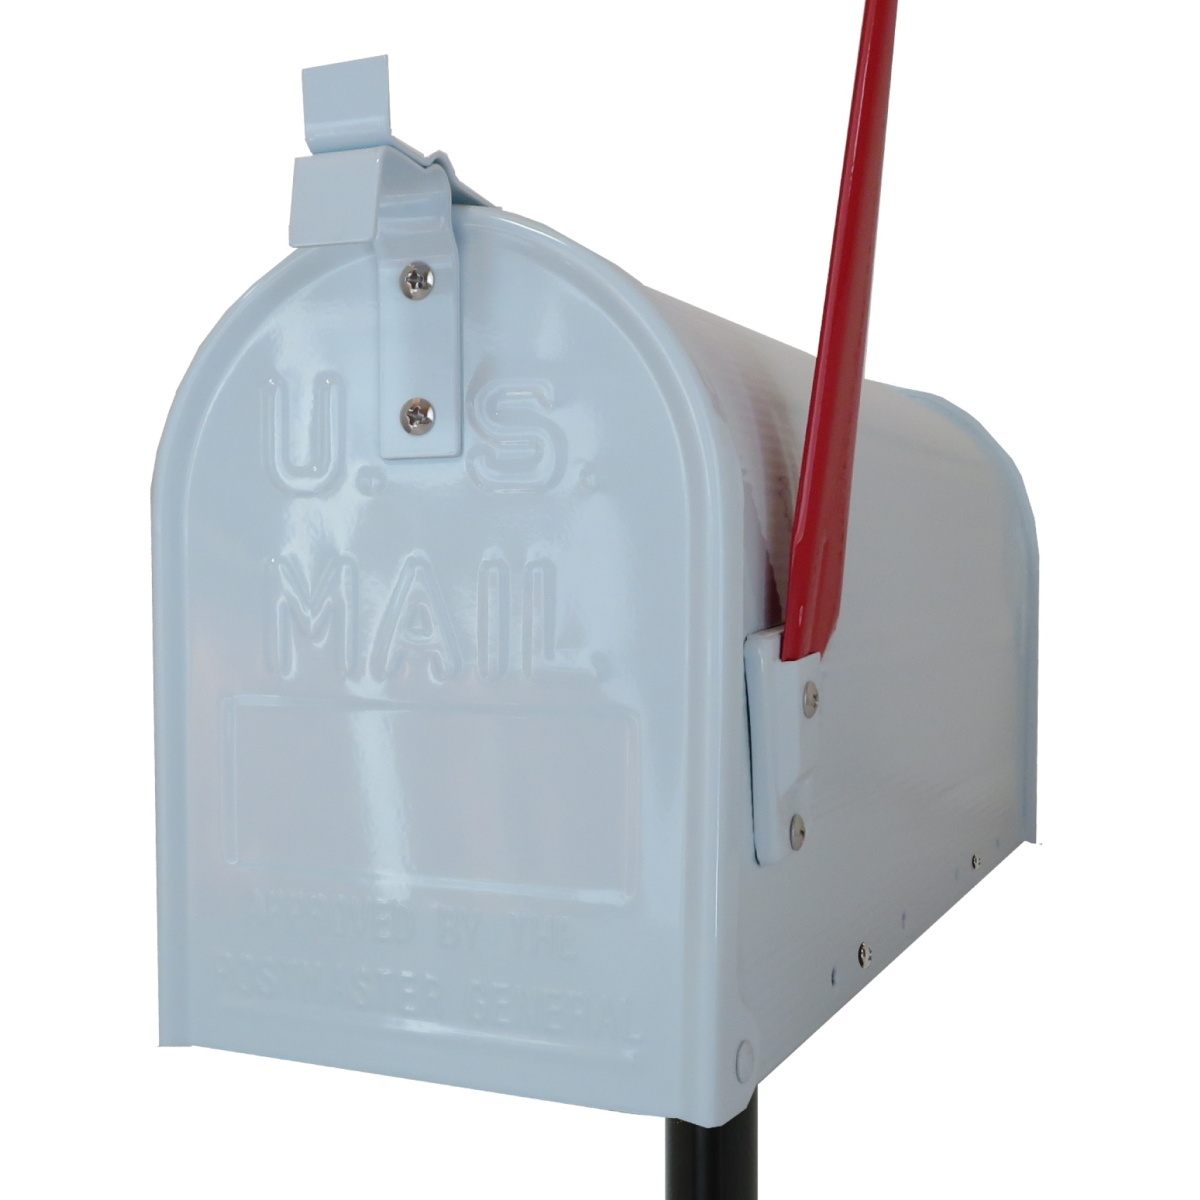 セール12月31日まで 郵便ポスト郵便受けおしゃれかわいい人気アメリカンUSメールボックススタンドお洒落なホワイト色ポストpm083